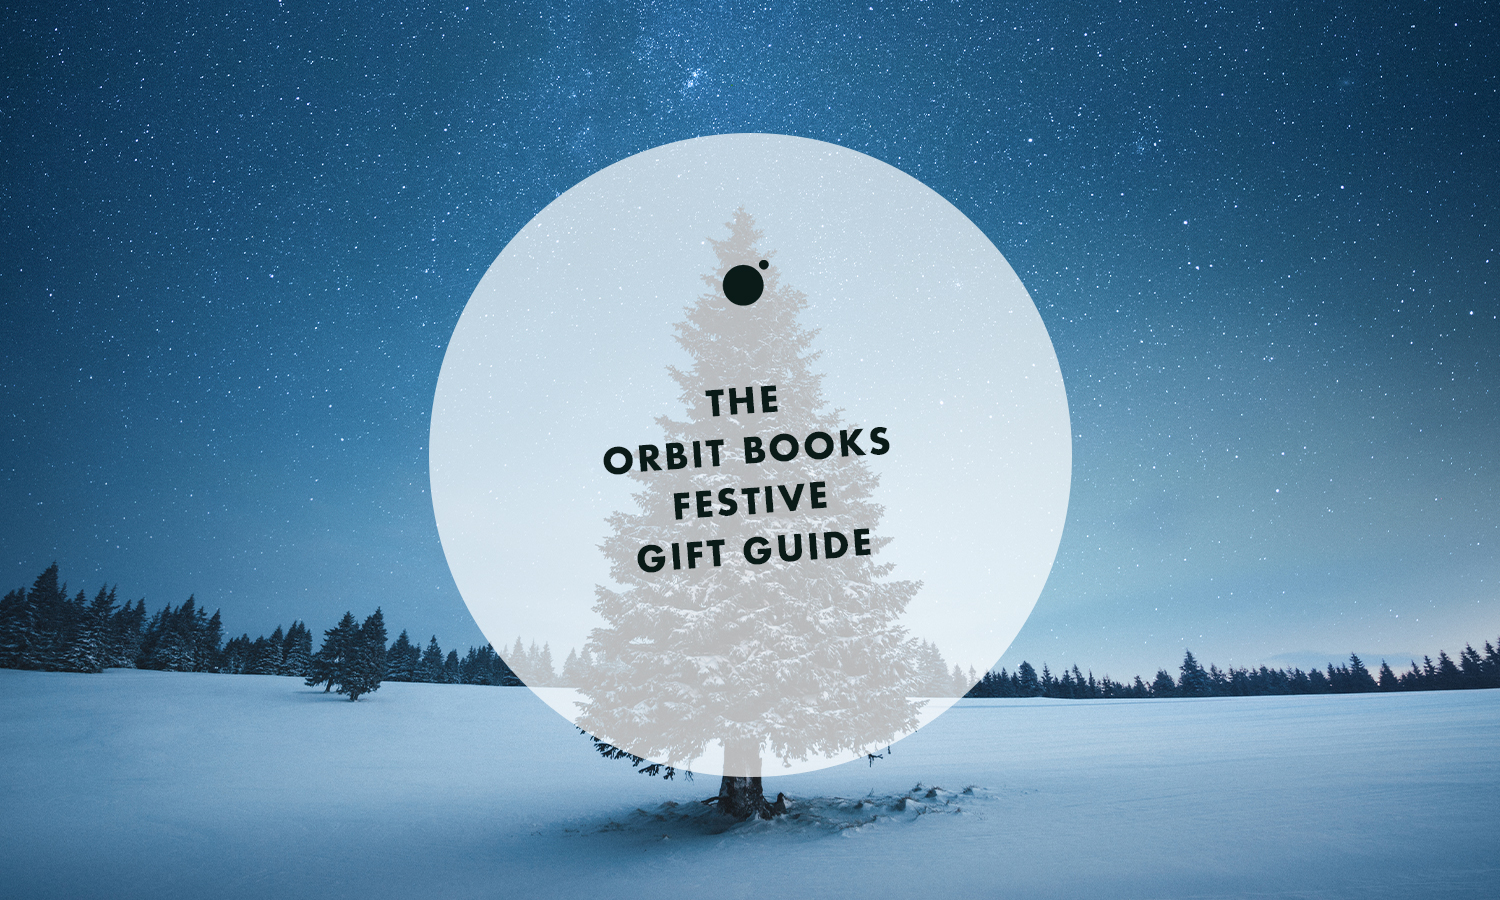 The Orbit Books Festive Gift Guide